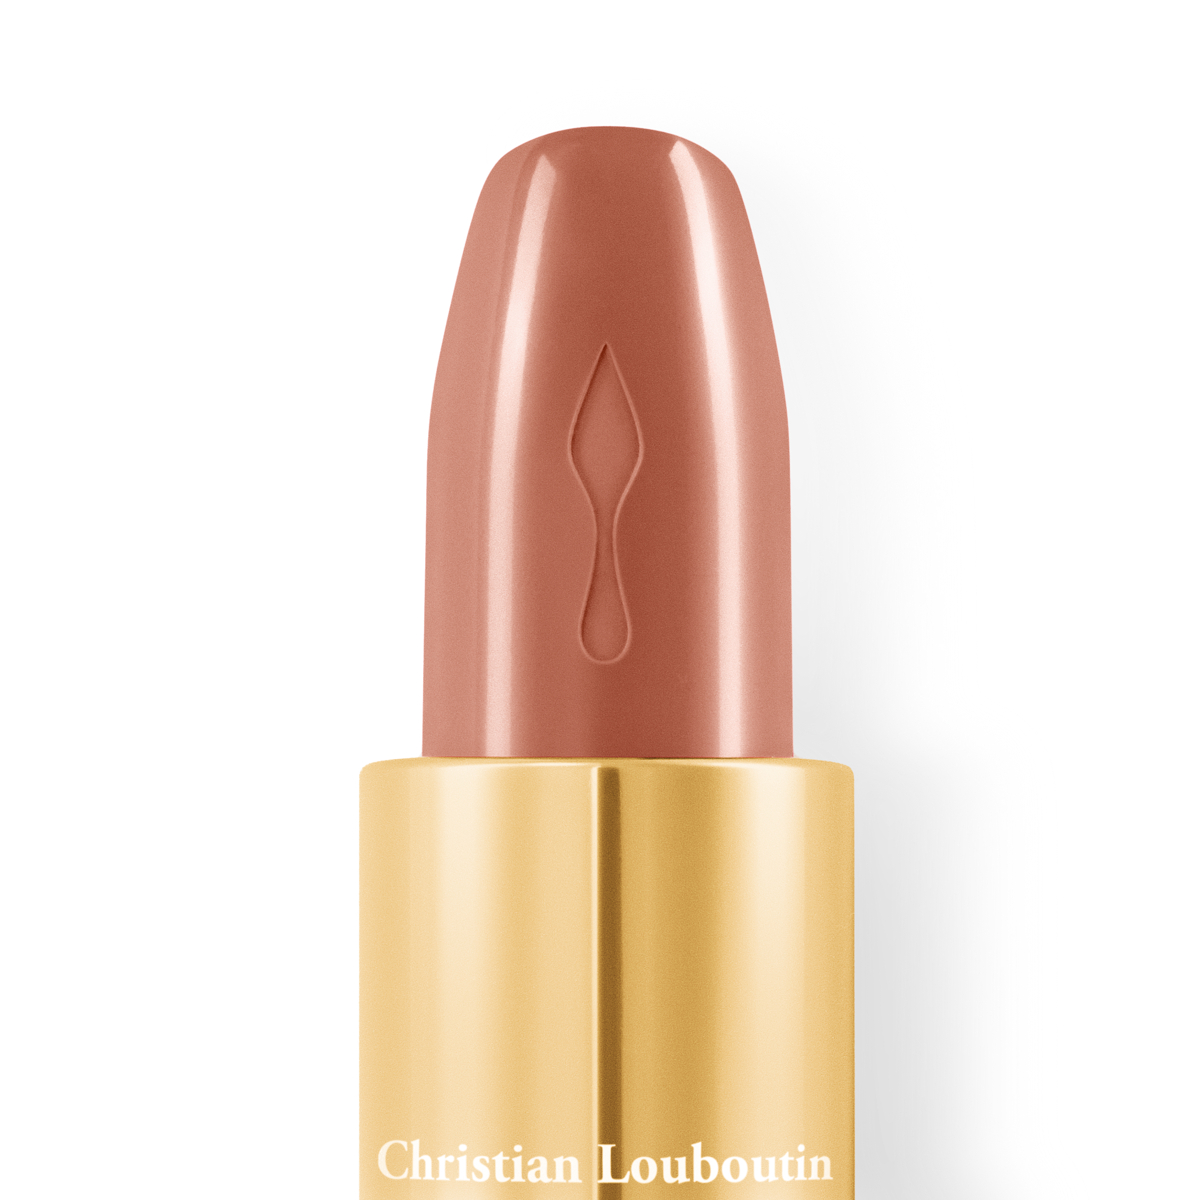 Christian Louboutin Beauty Store, 2015-05-16